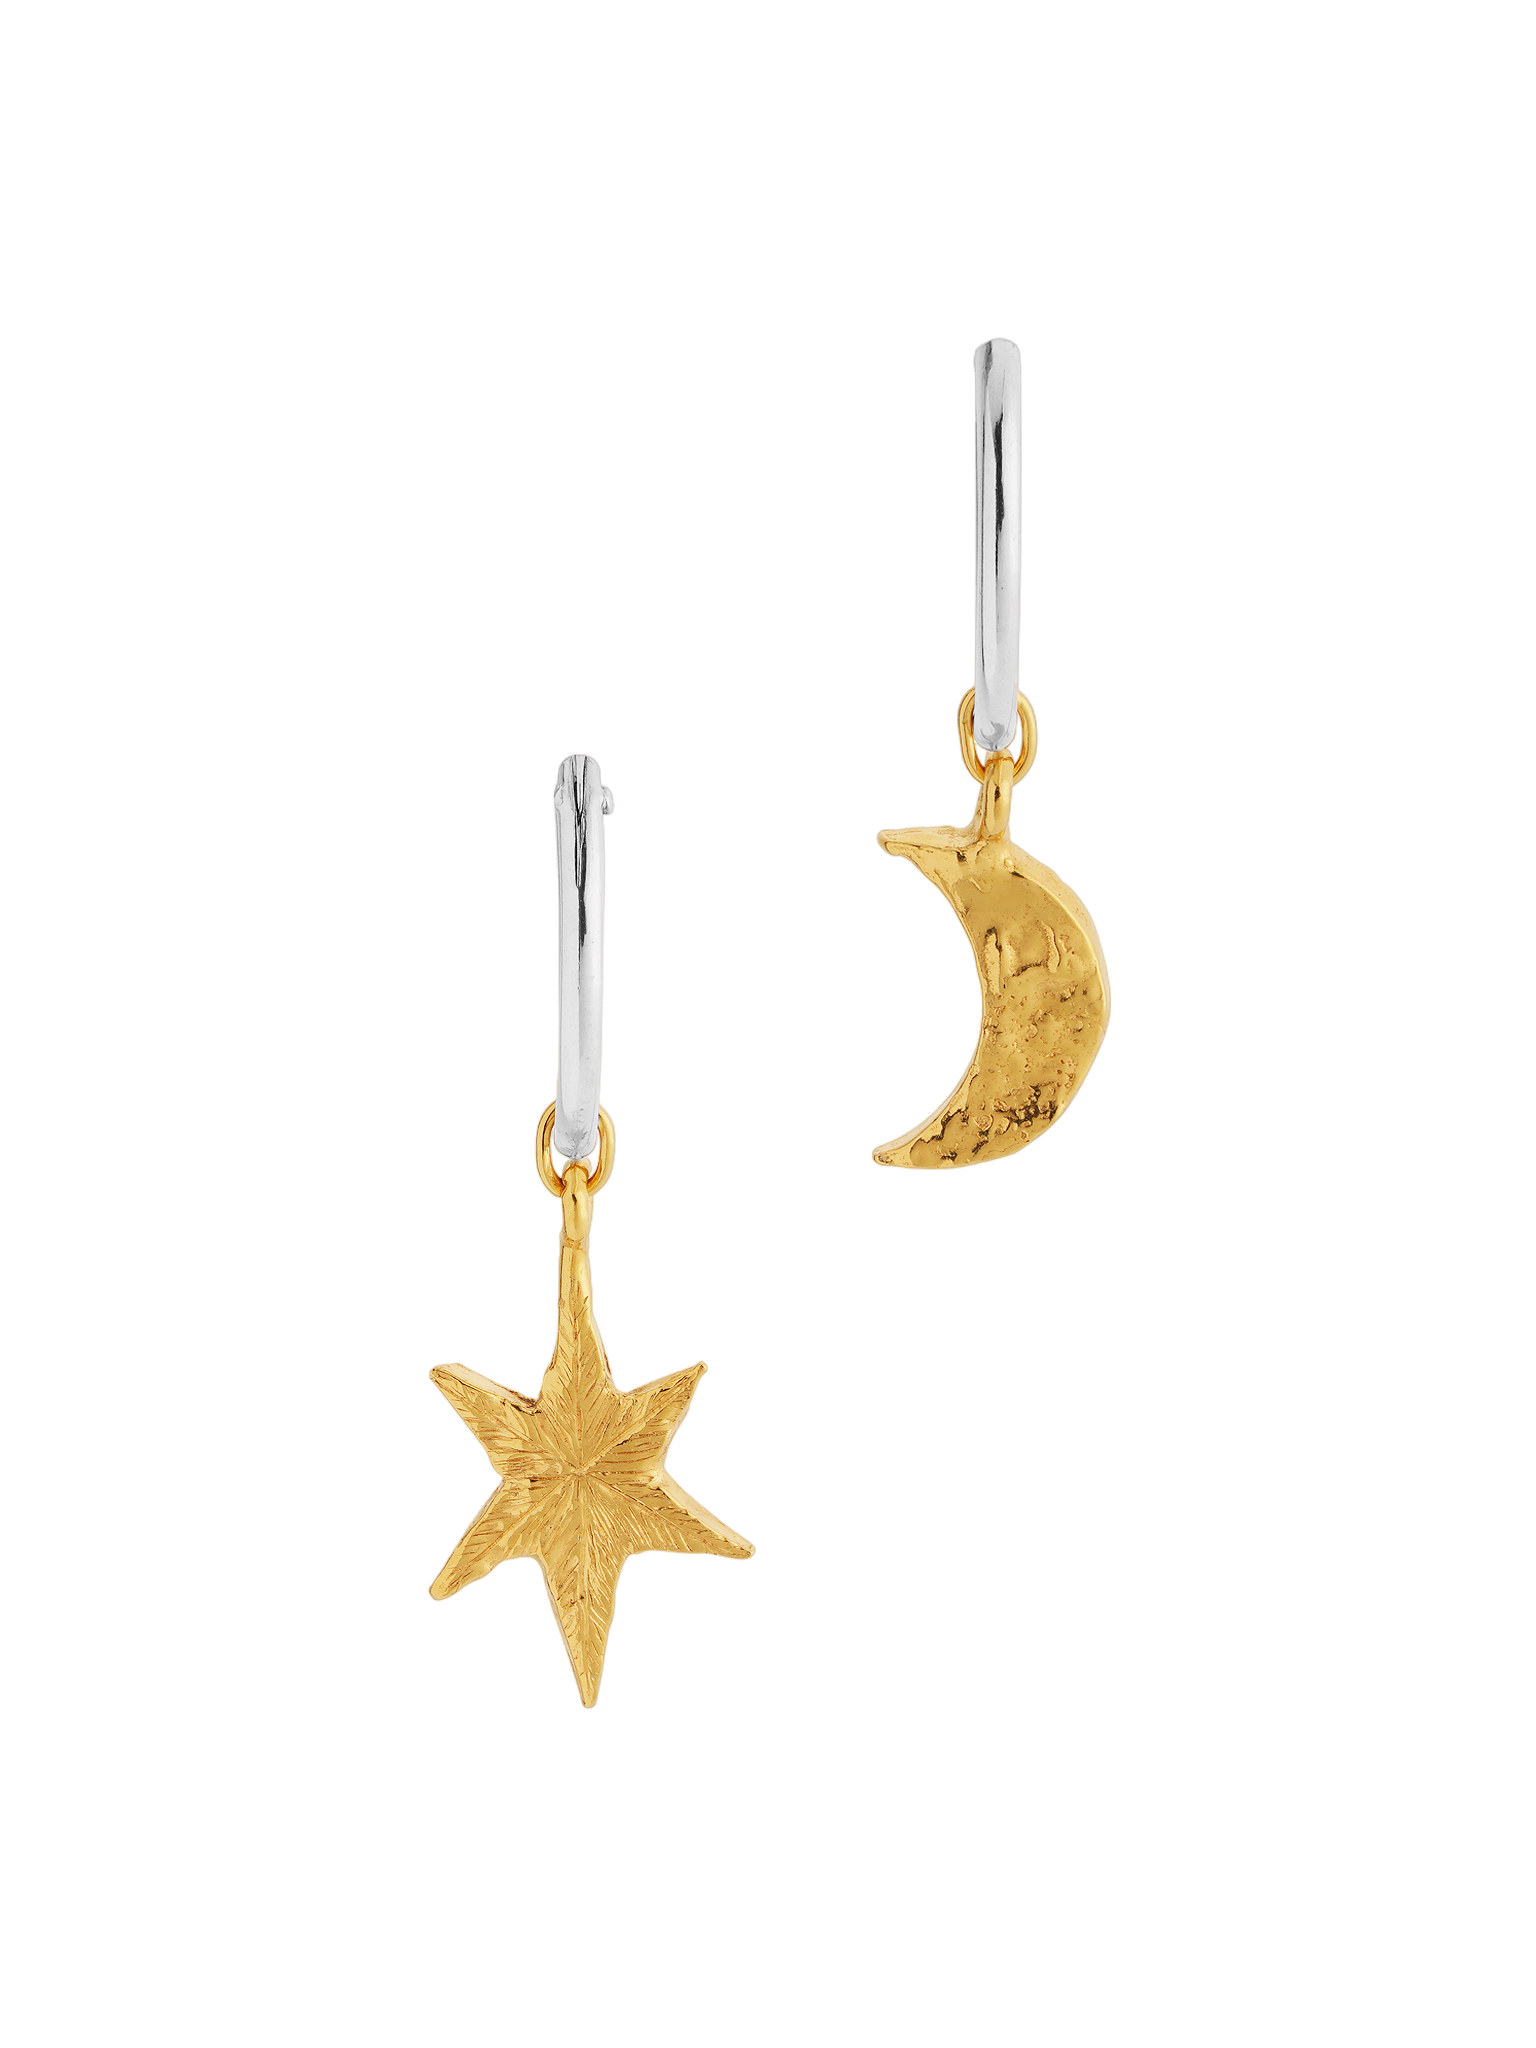 North star and moon hoop earrings